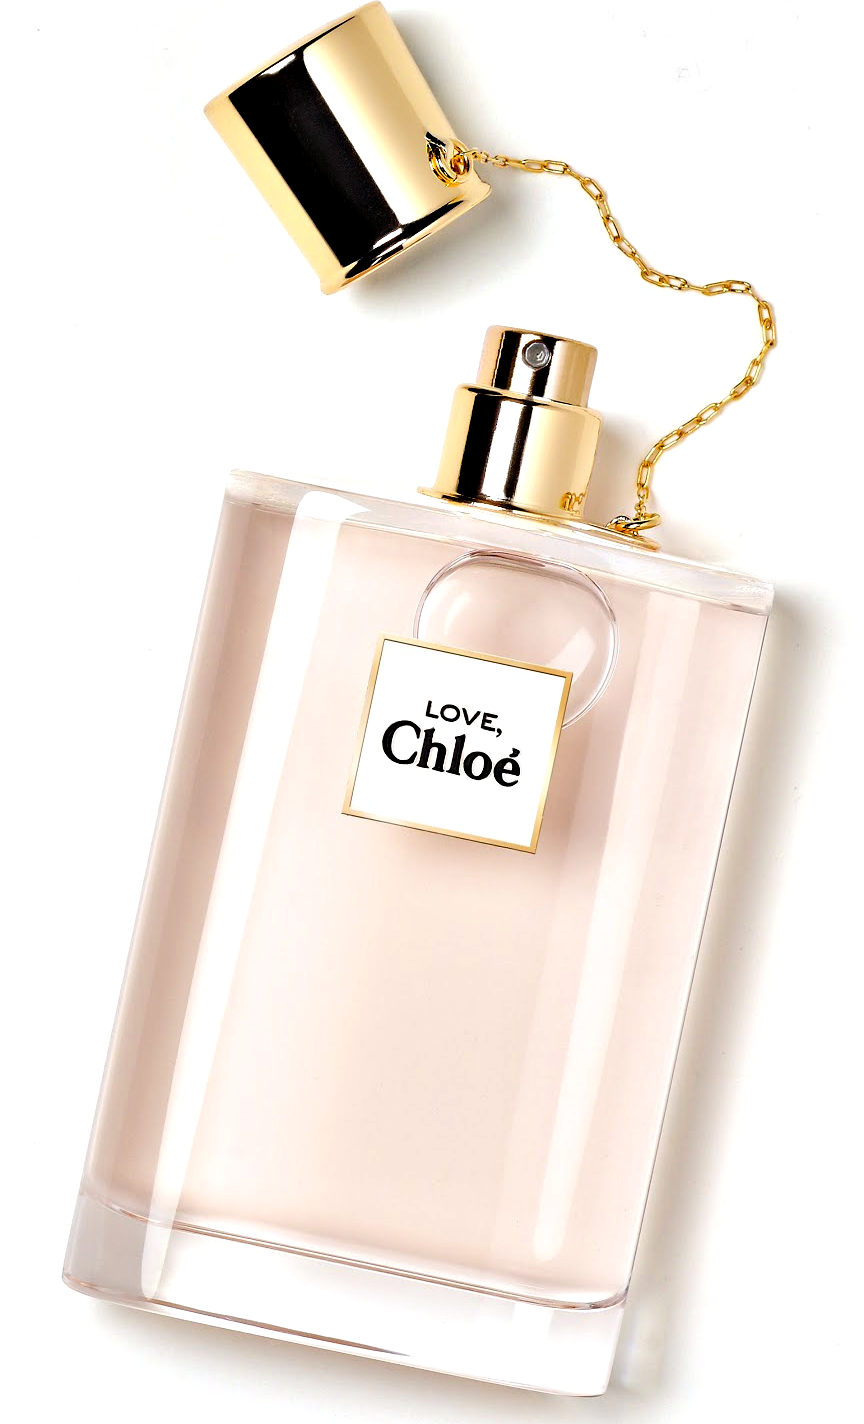 メゾンフレグランス・ニッチフレグランス香水blog: クロエ(Chloe)の香水まとめ。クロエ香水の歴史はローズとフローラルがカギ。